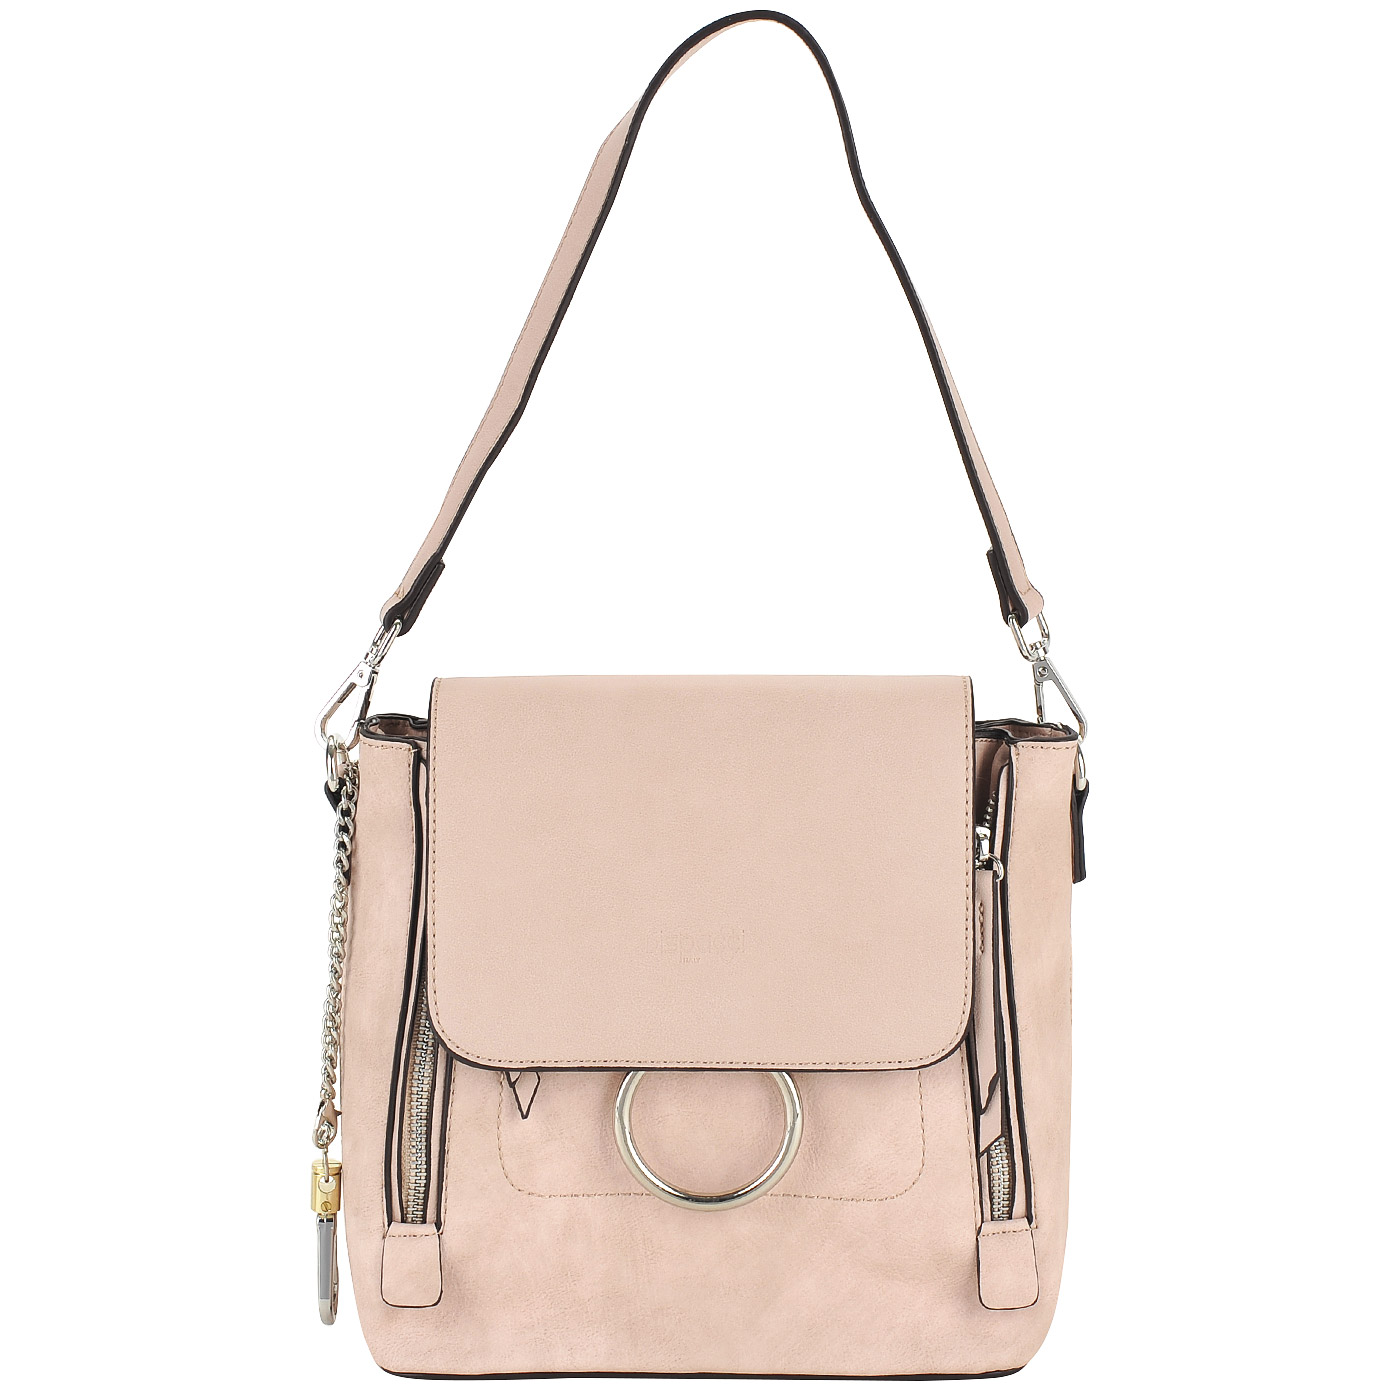 Dispacci Практичная женская сумка-рюкзак из экокожи розового цвета